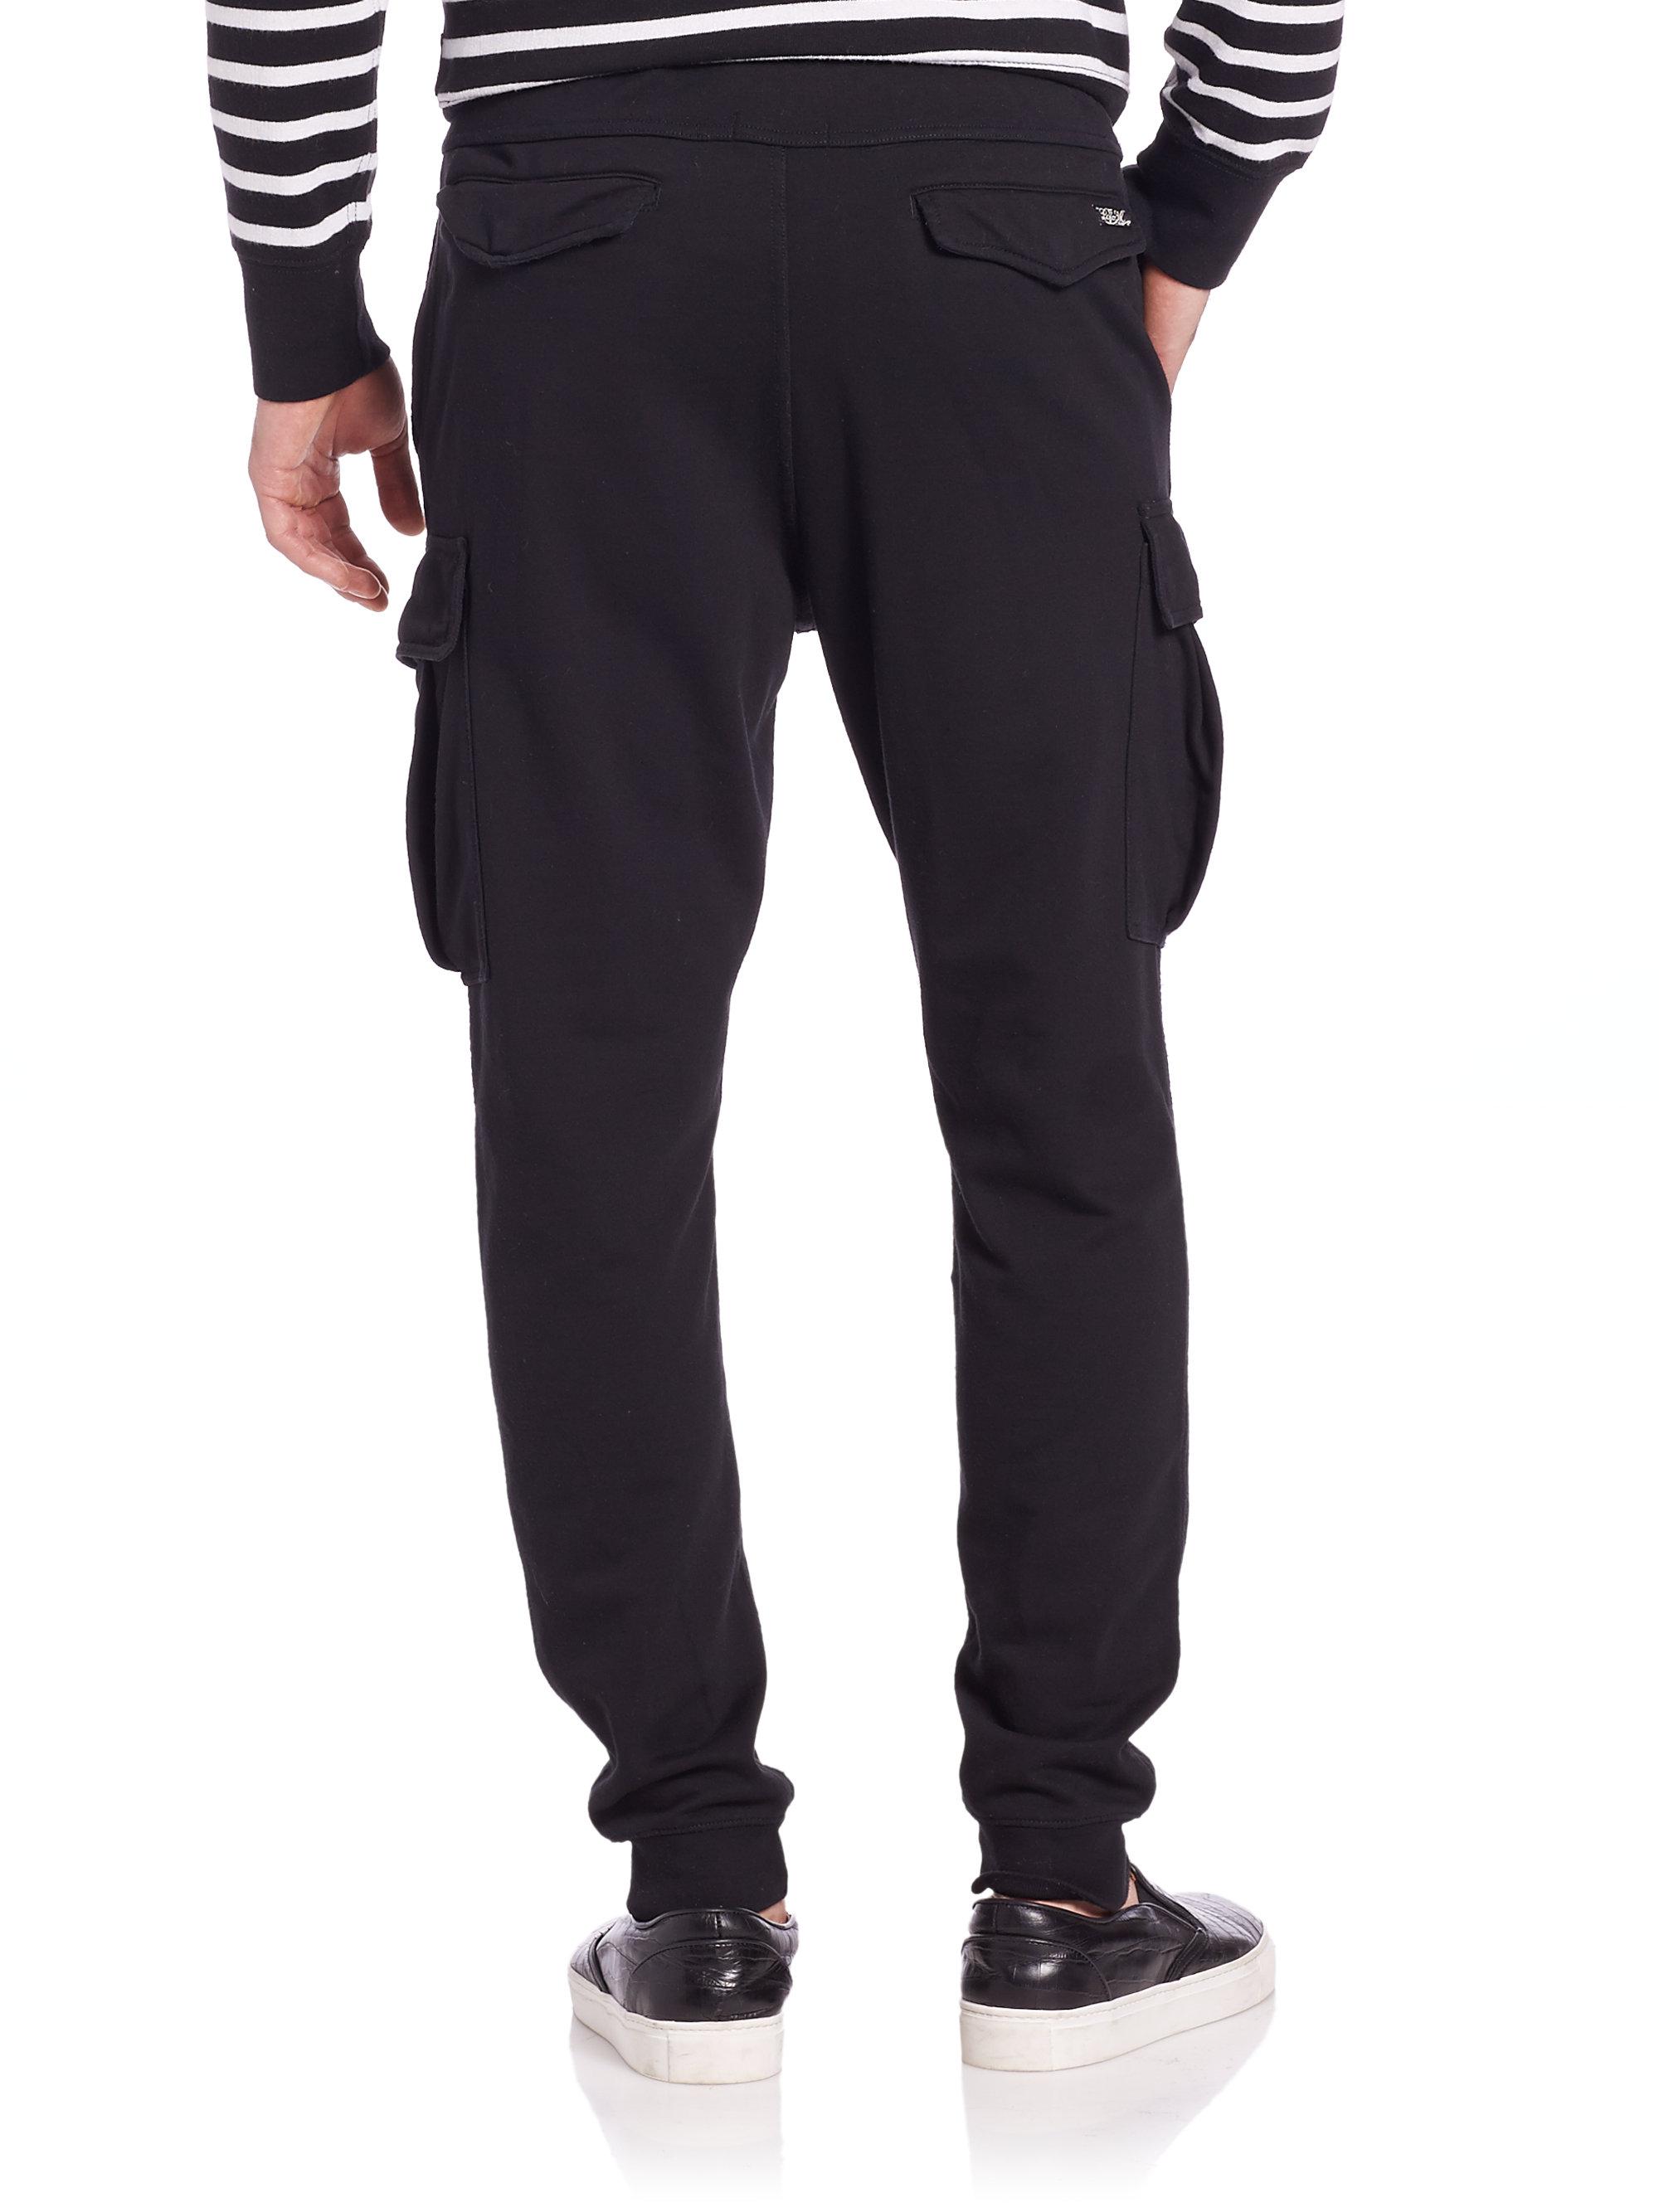 Polo Ralph Lauren Cargo Sweatpants in Black for Men - Lyst